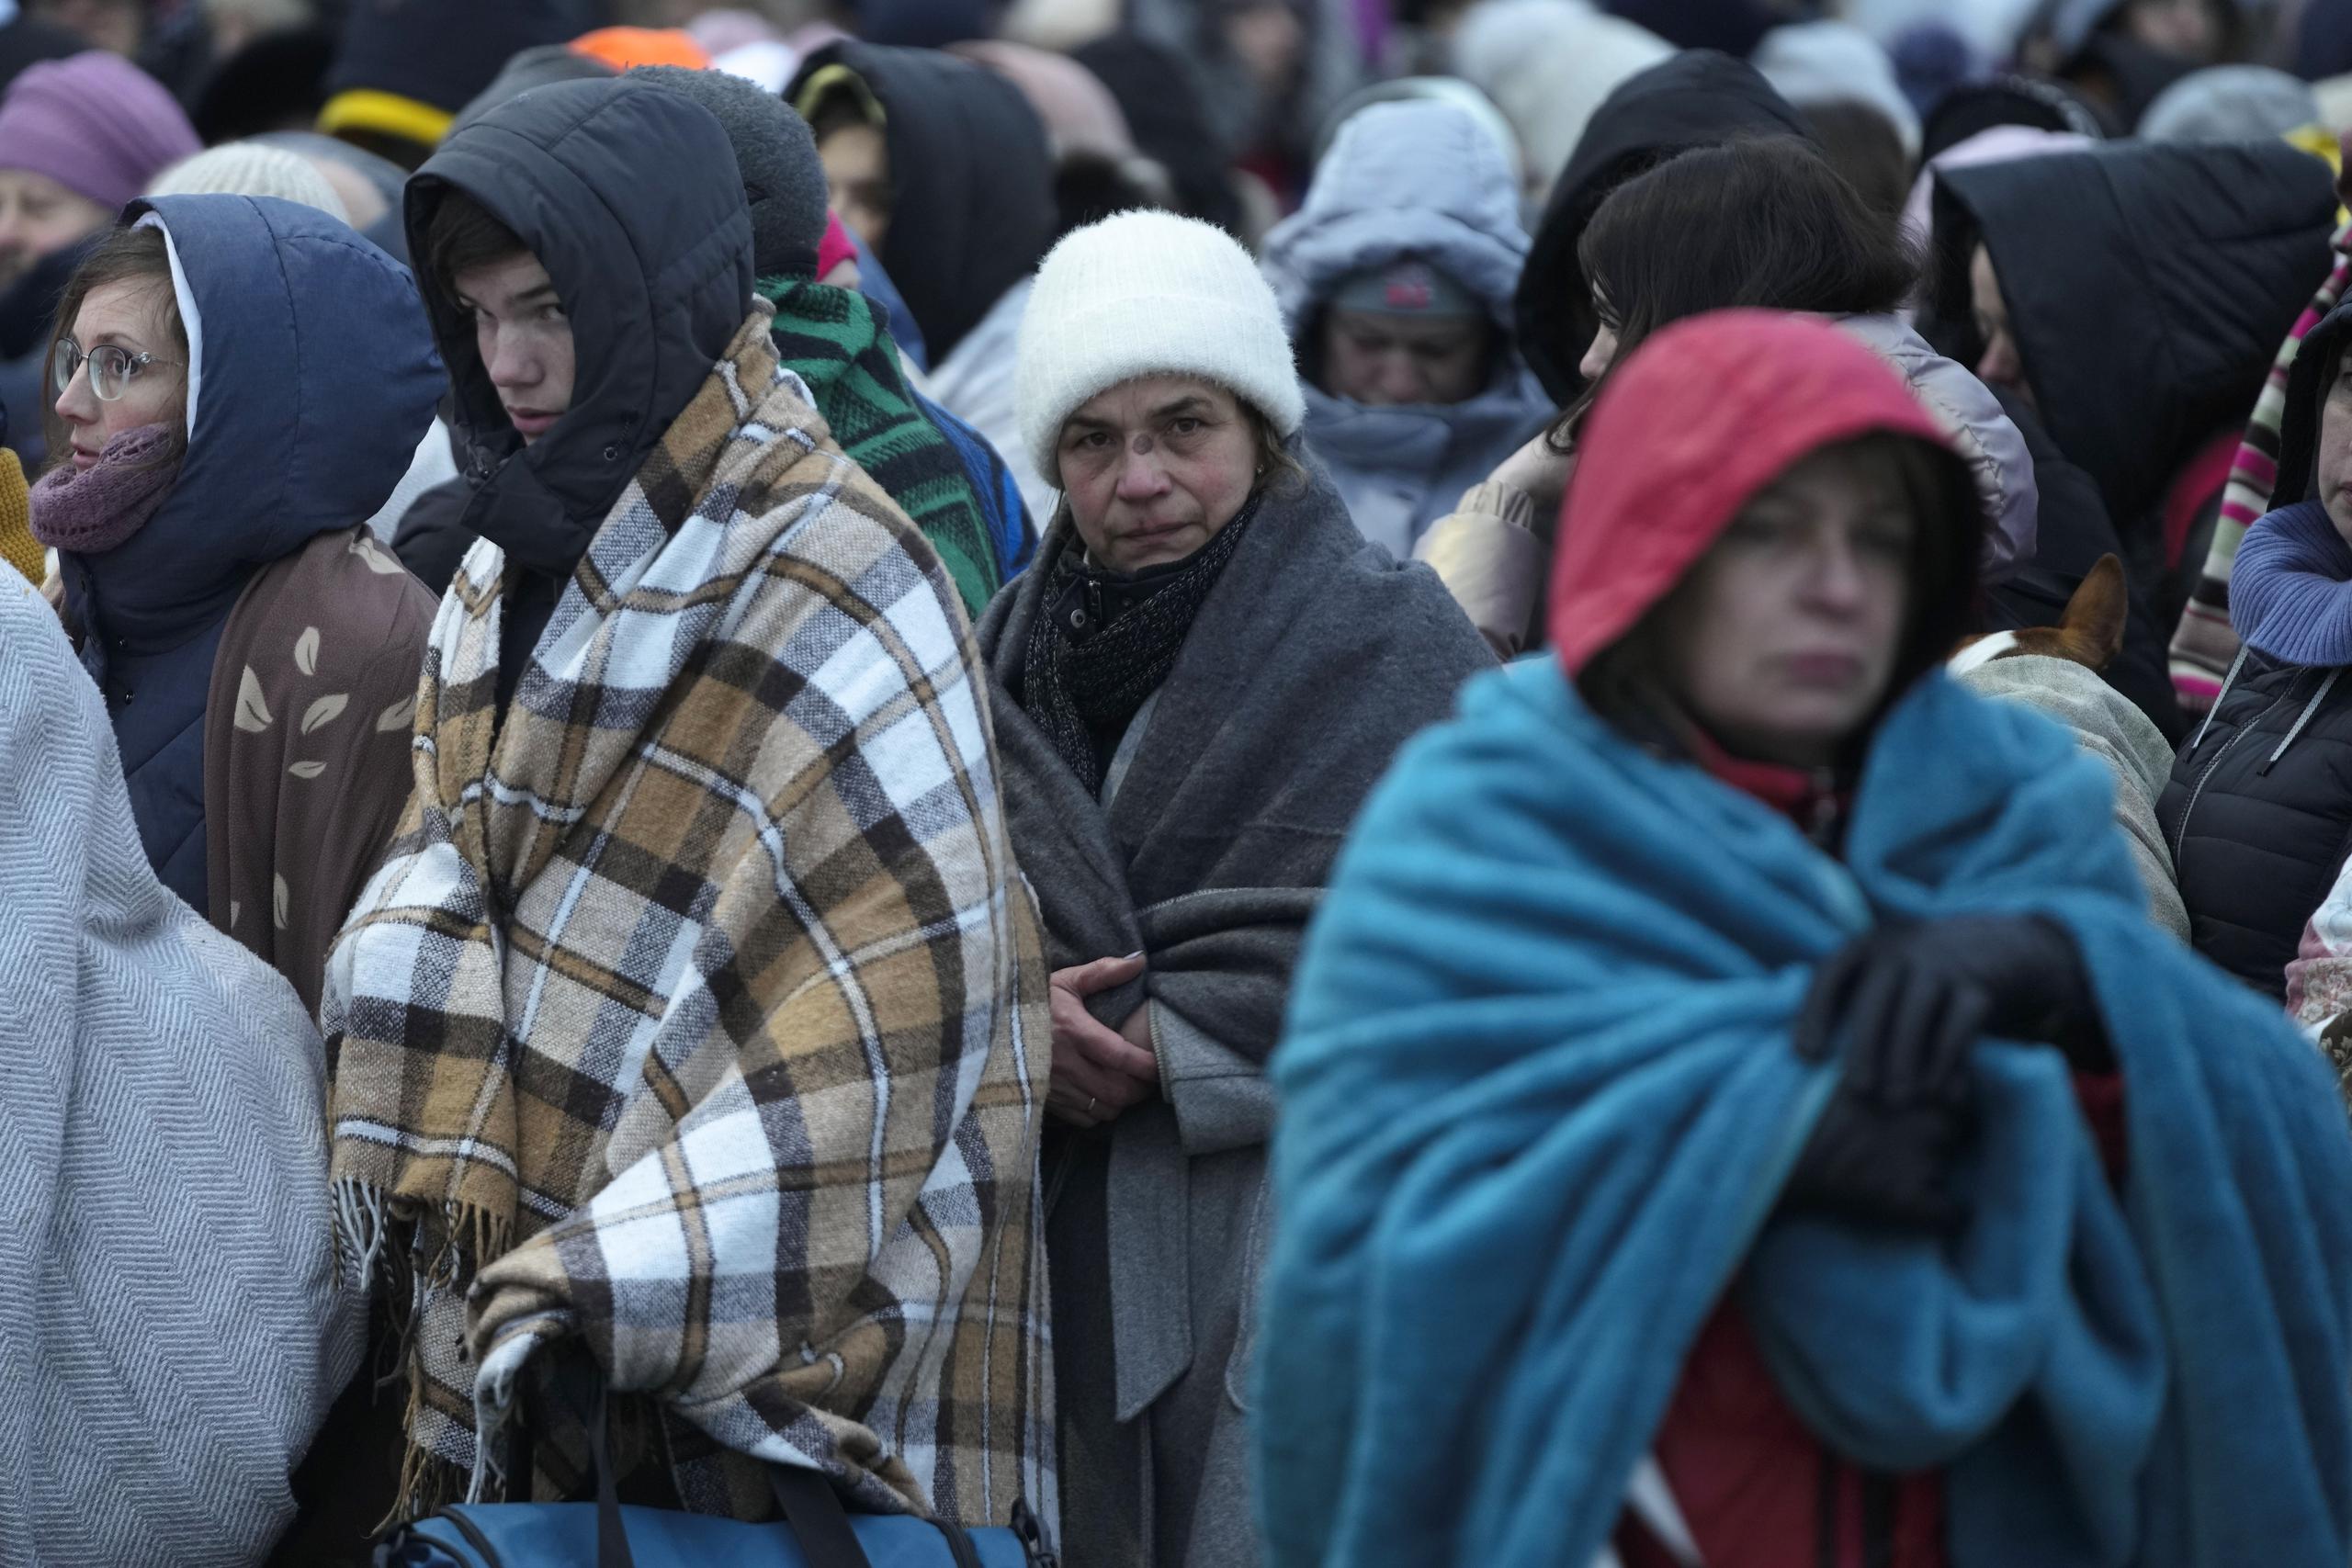 Alemania tiene registrada la llegada de 310,000 refugiados procedentes de Ucrania desde el inicio de la invasión. Son estimaciones a la baja, ya que en cuanto ingresan en territorio comunitario tienen libertad de movimiento y no están obligados a registrarse.